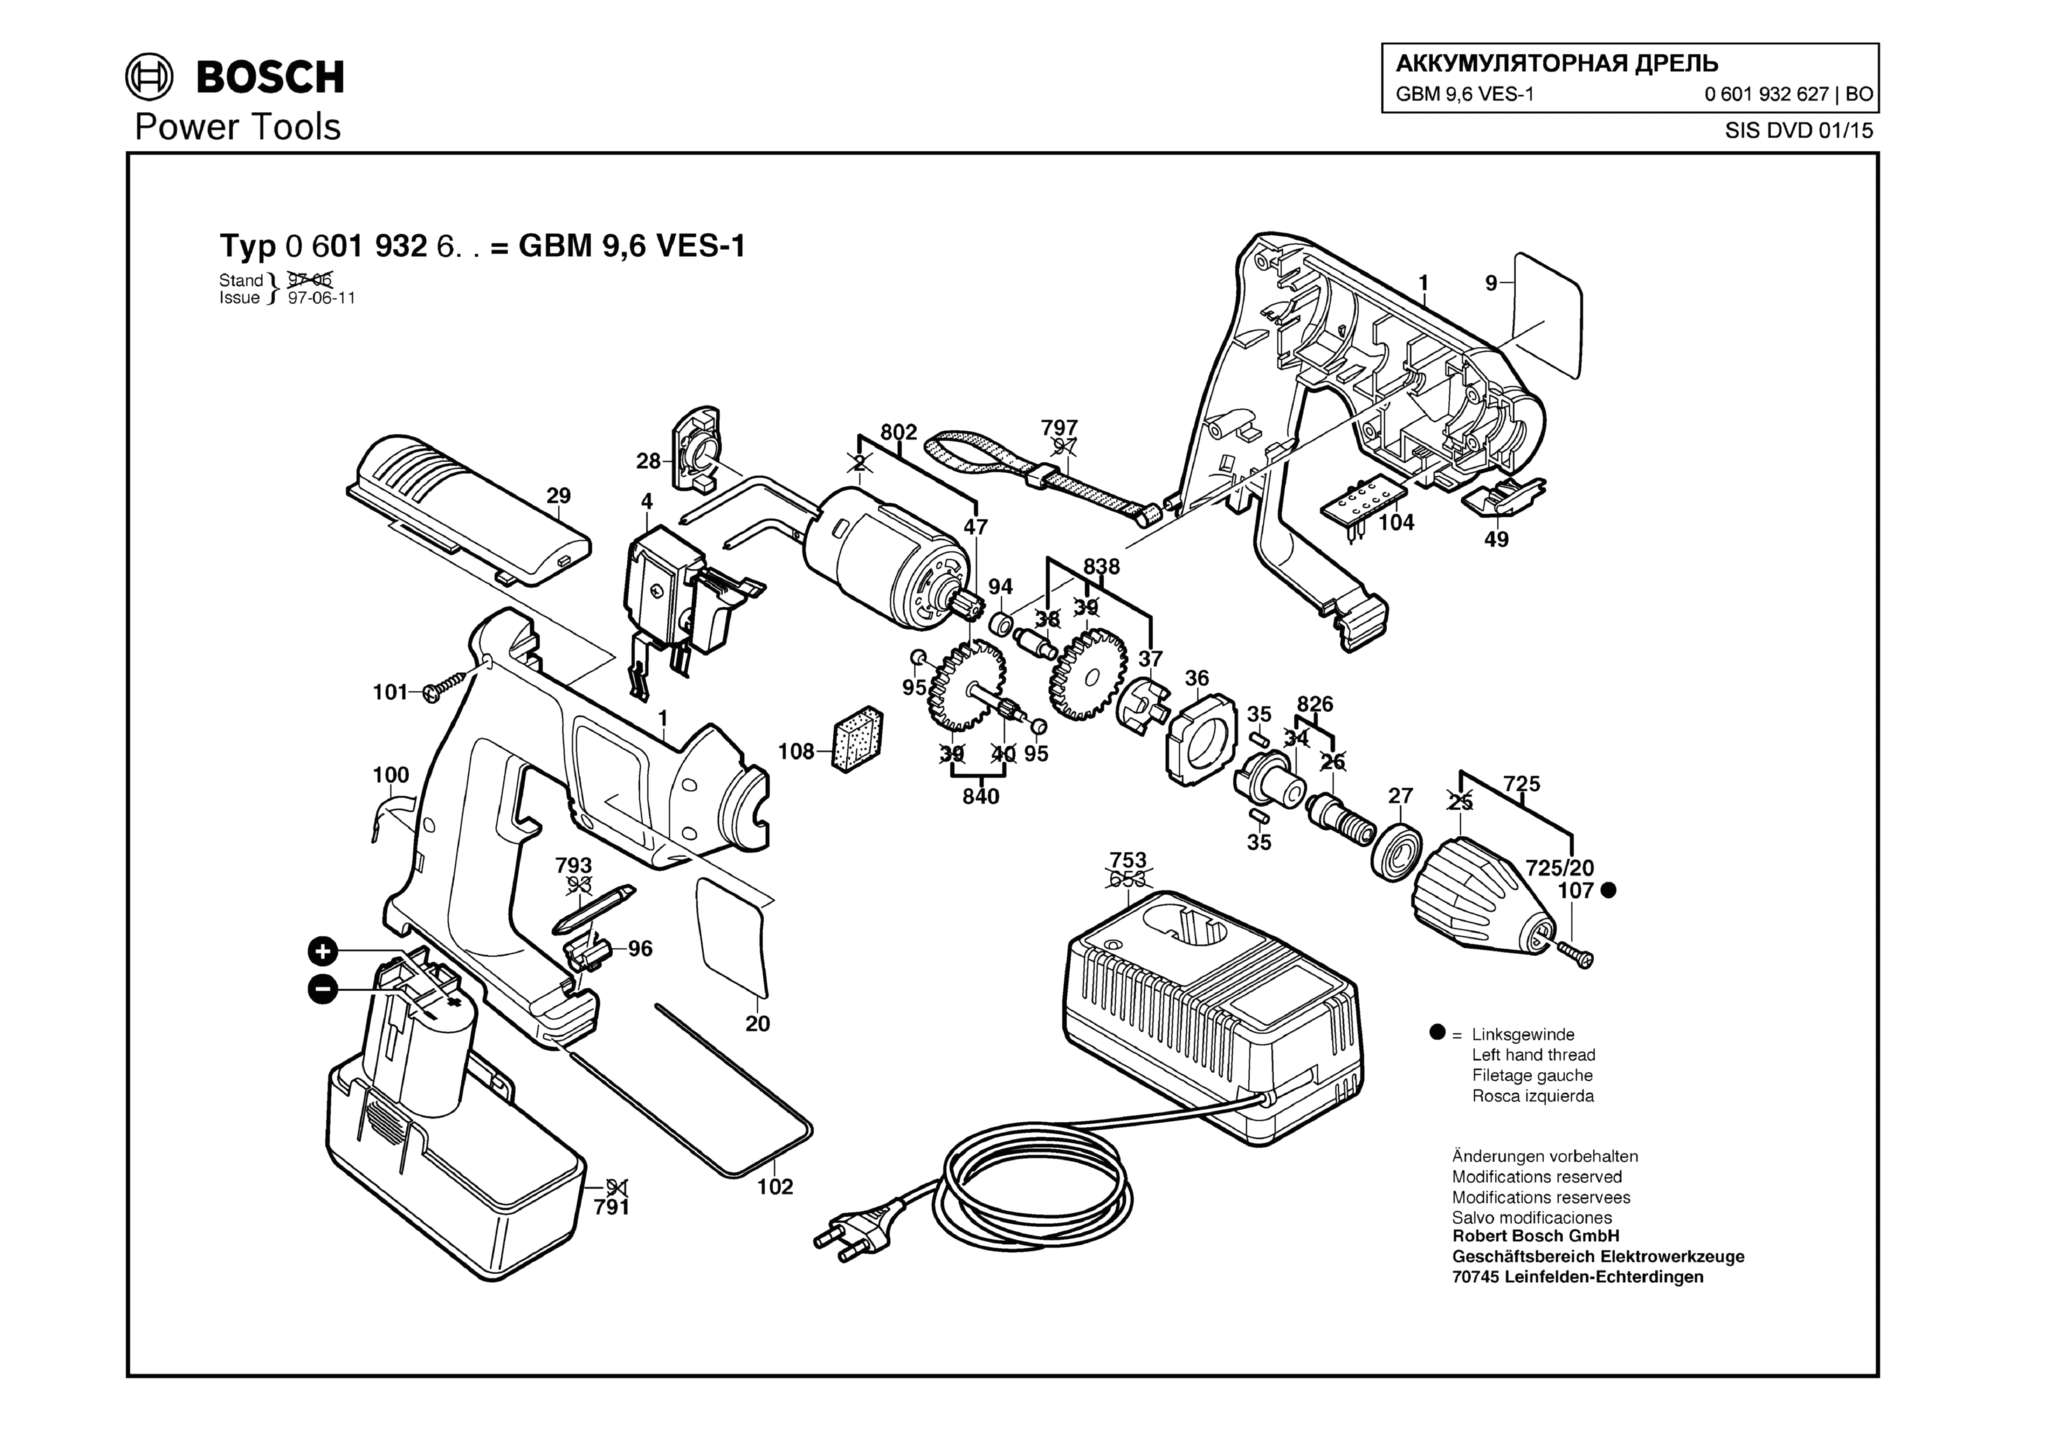 Запчасти, схема и деталировка Bosch GBM 9,6 VES-1 (ТИП 0601932627)